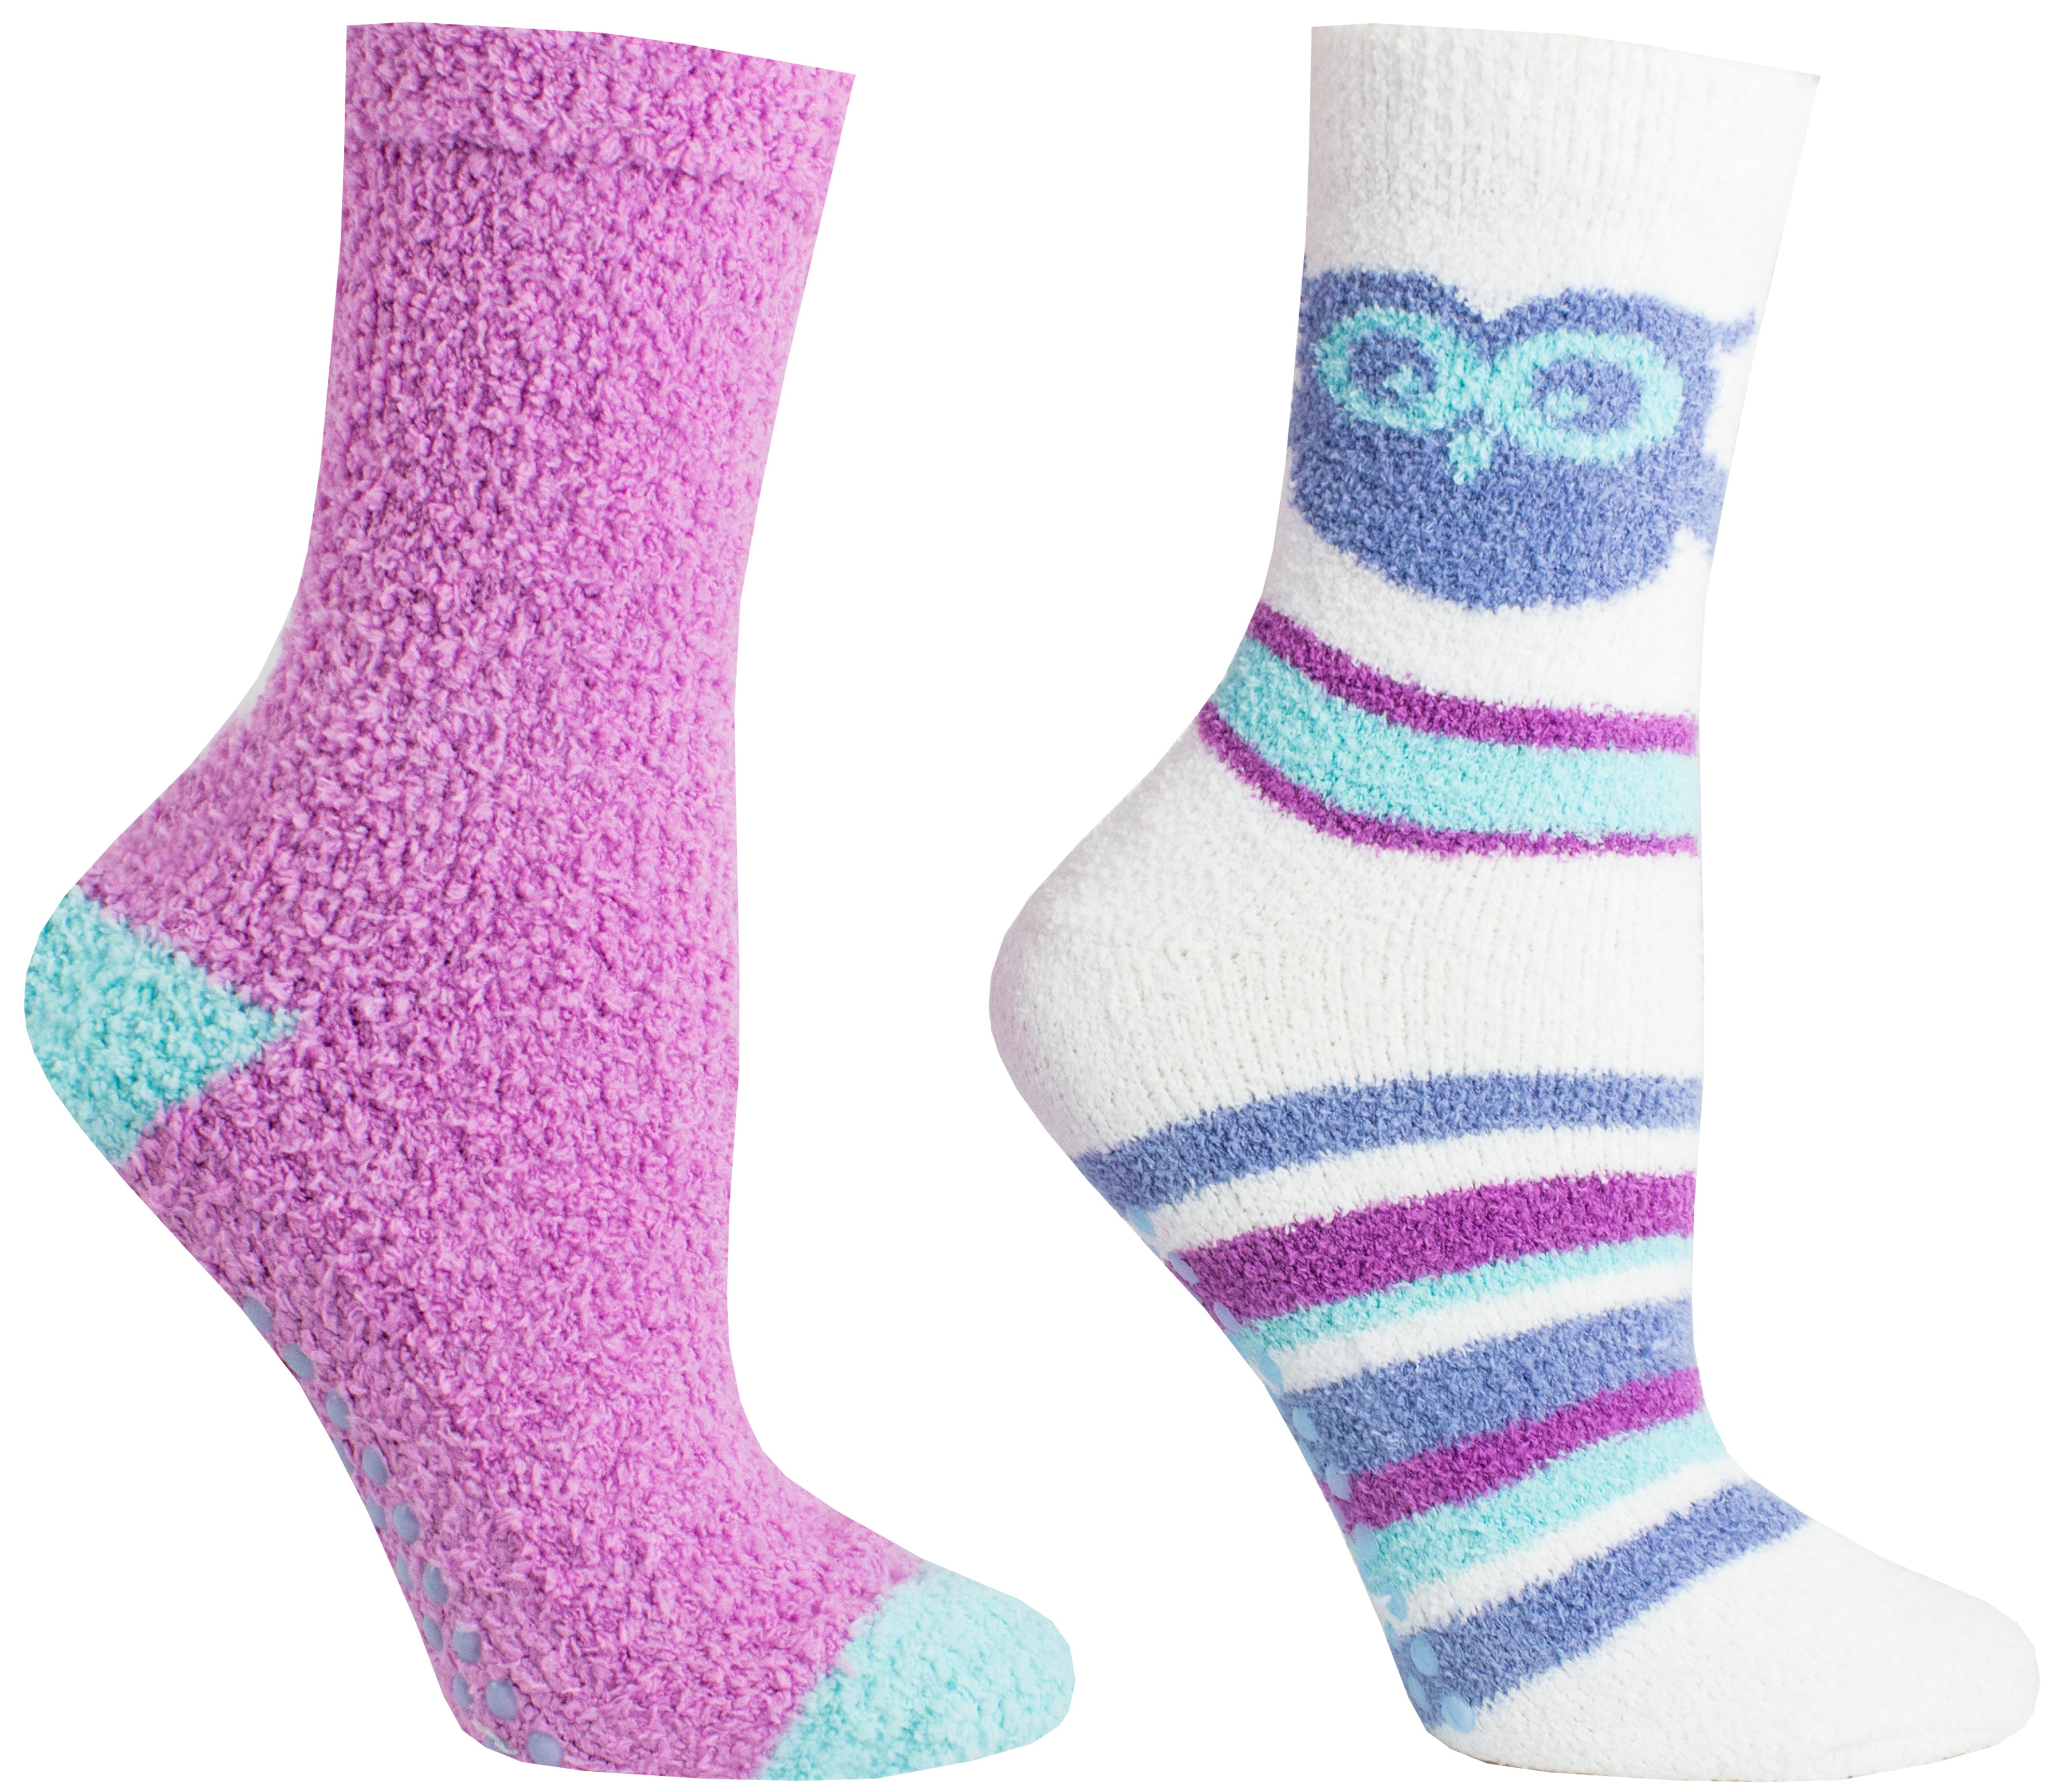 2 Pair Pack Grey/Blue Chenille Owl Slipper Socks